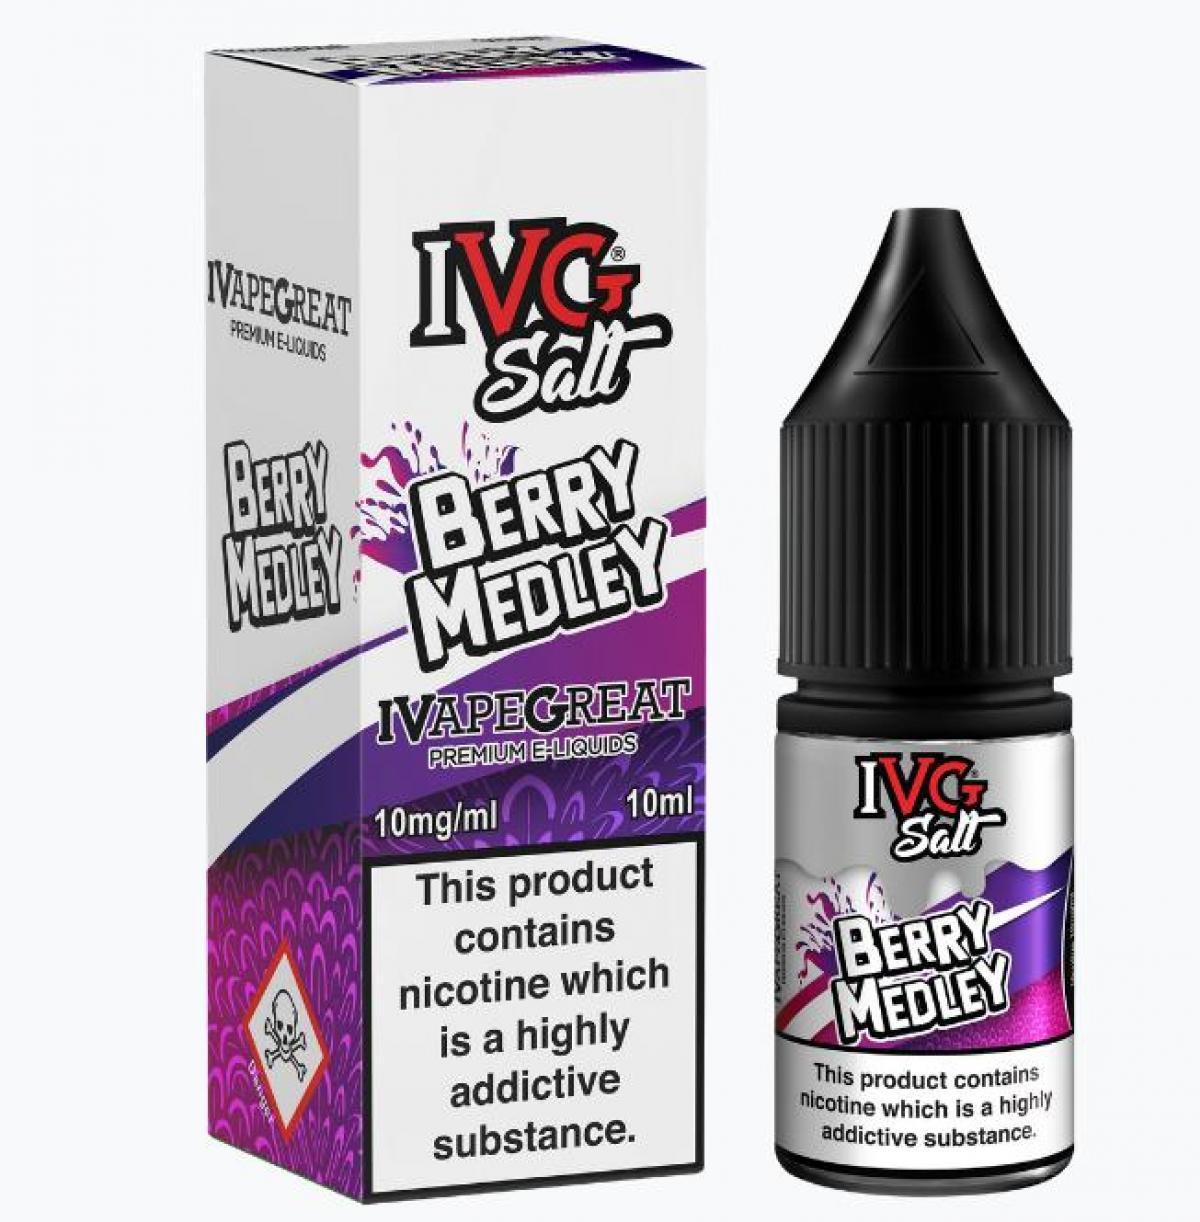 Berry Medley Nic Salt E-Liquid by IVG